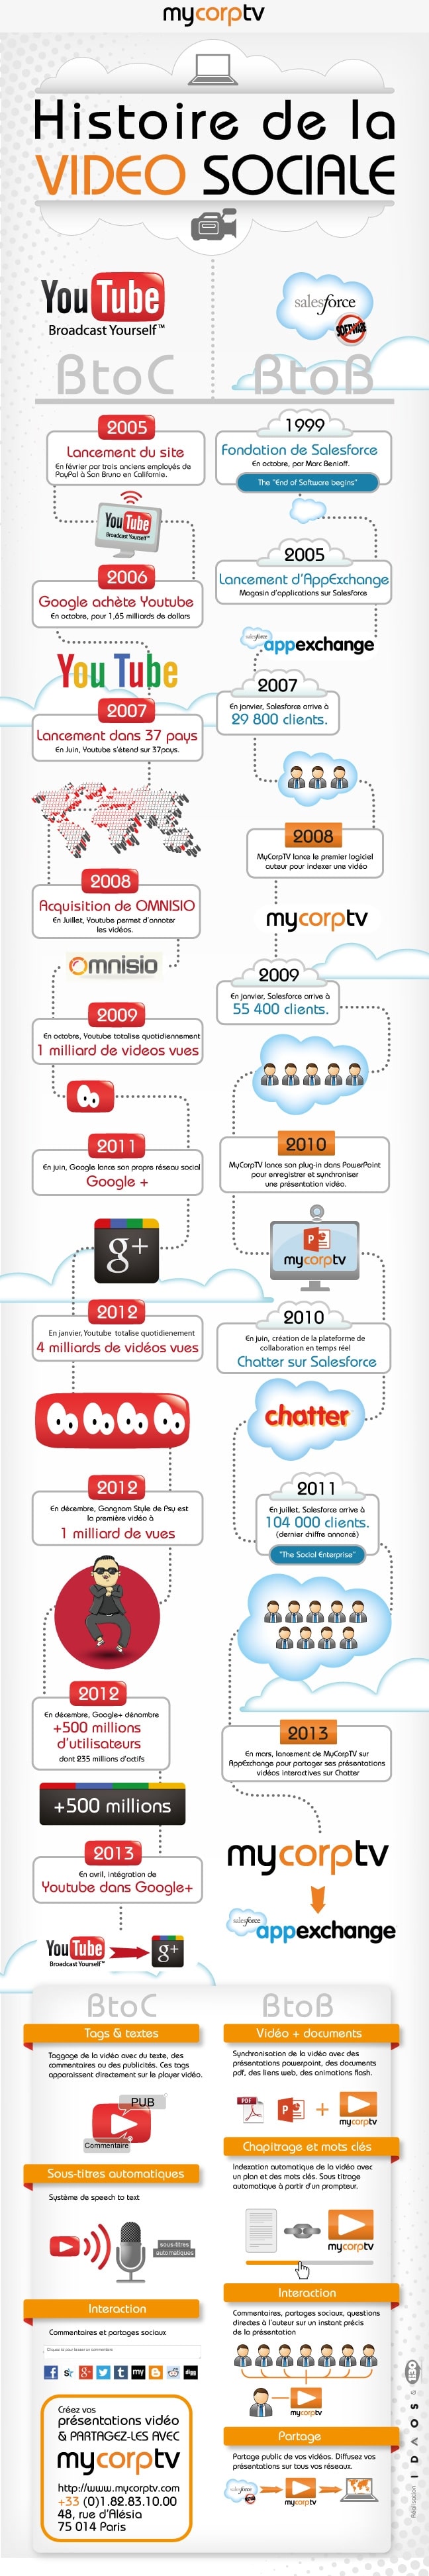 Infographie | L'histoire de la vidéo sociale B2C et B2B